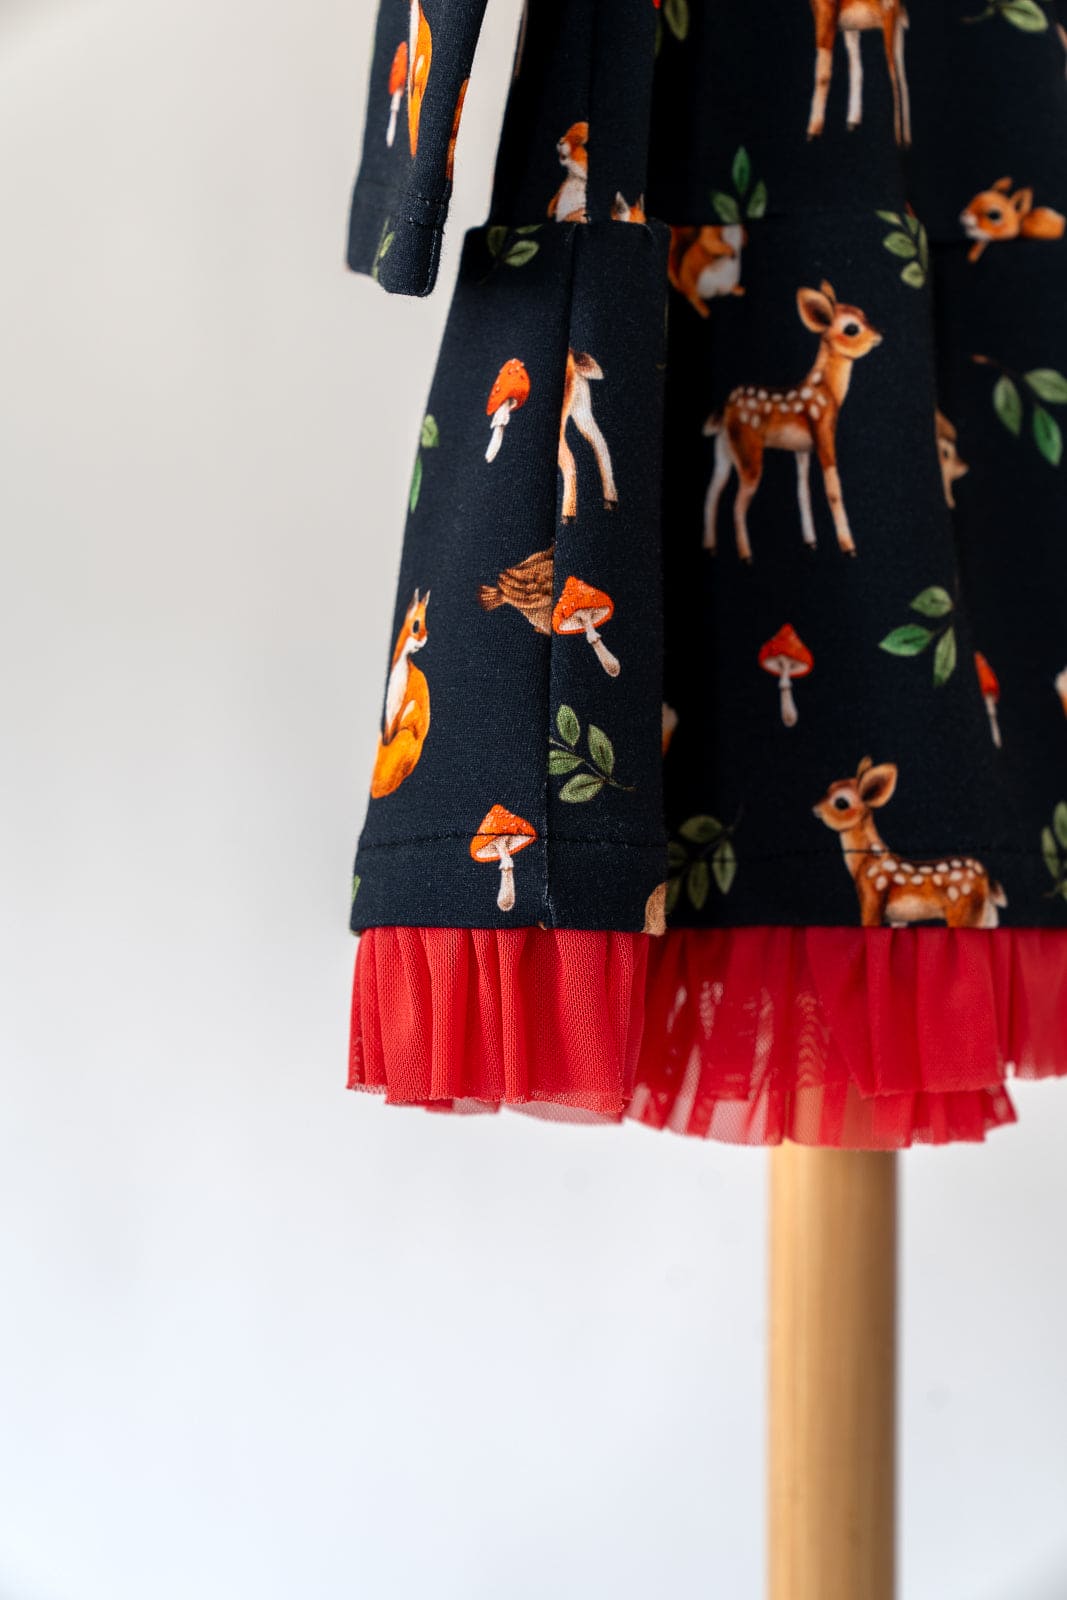 Vaikiška suknelė su miško žvėreliais, raukiniais ir tiūliu 98-104 dydis